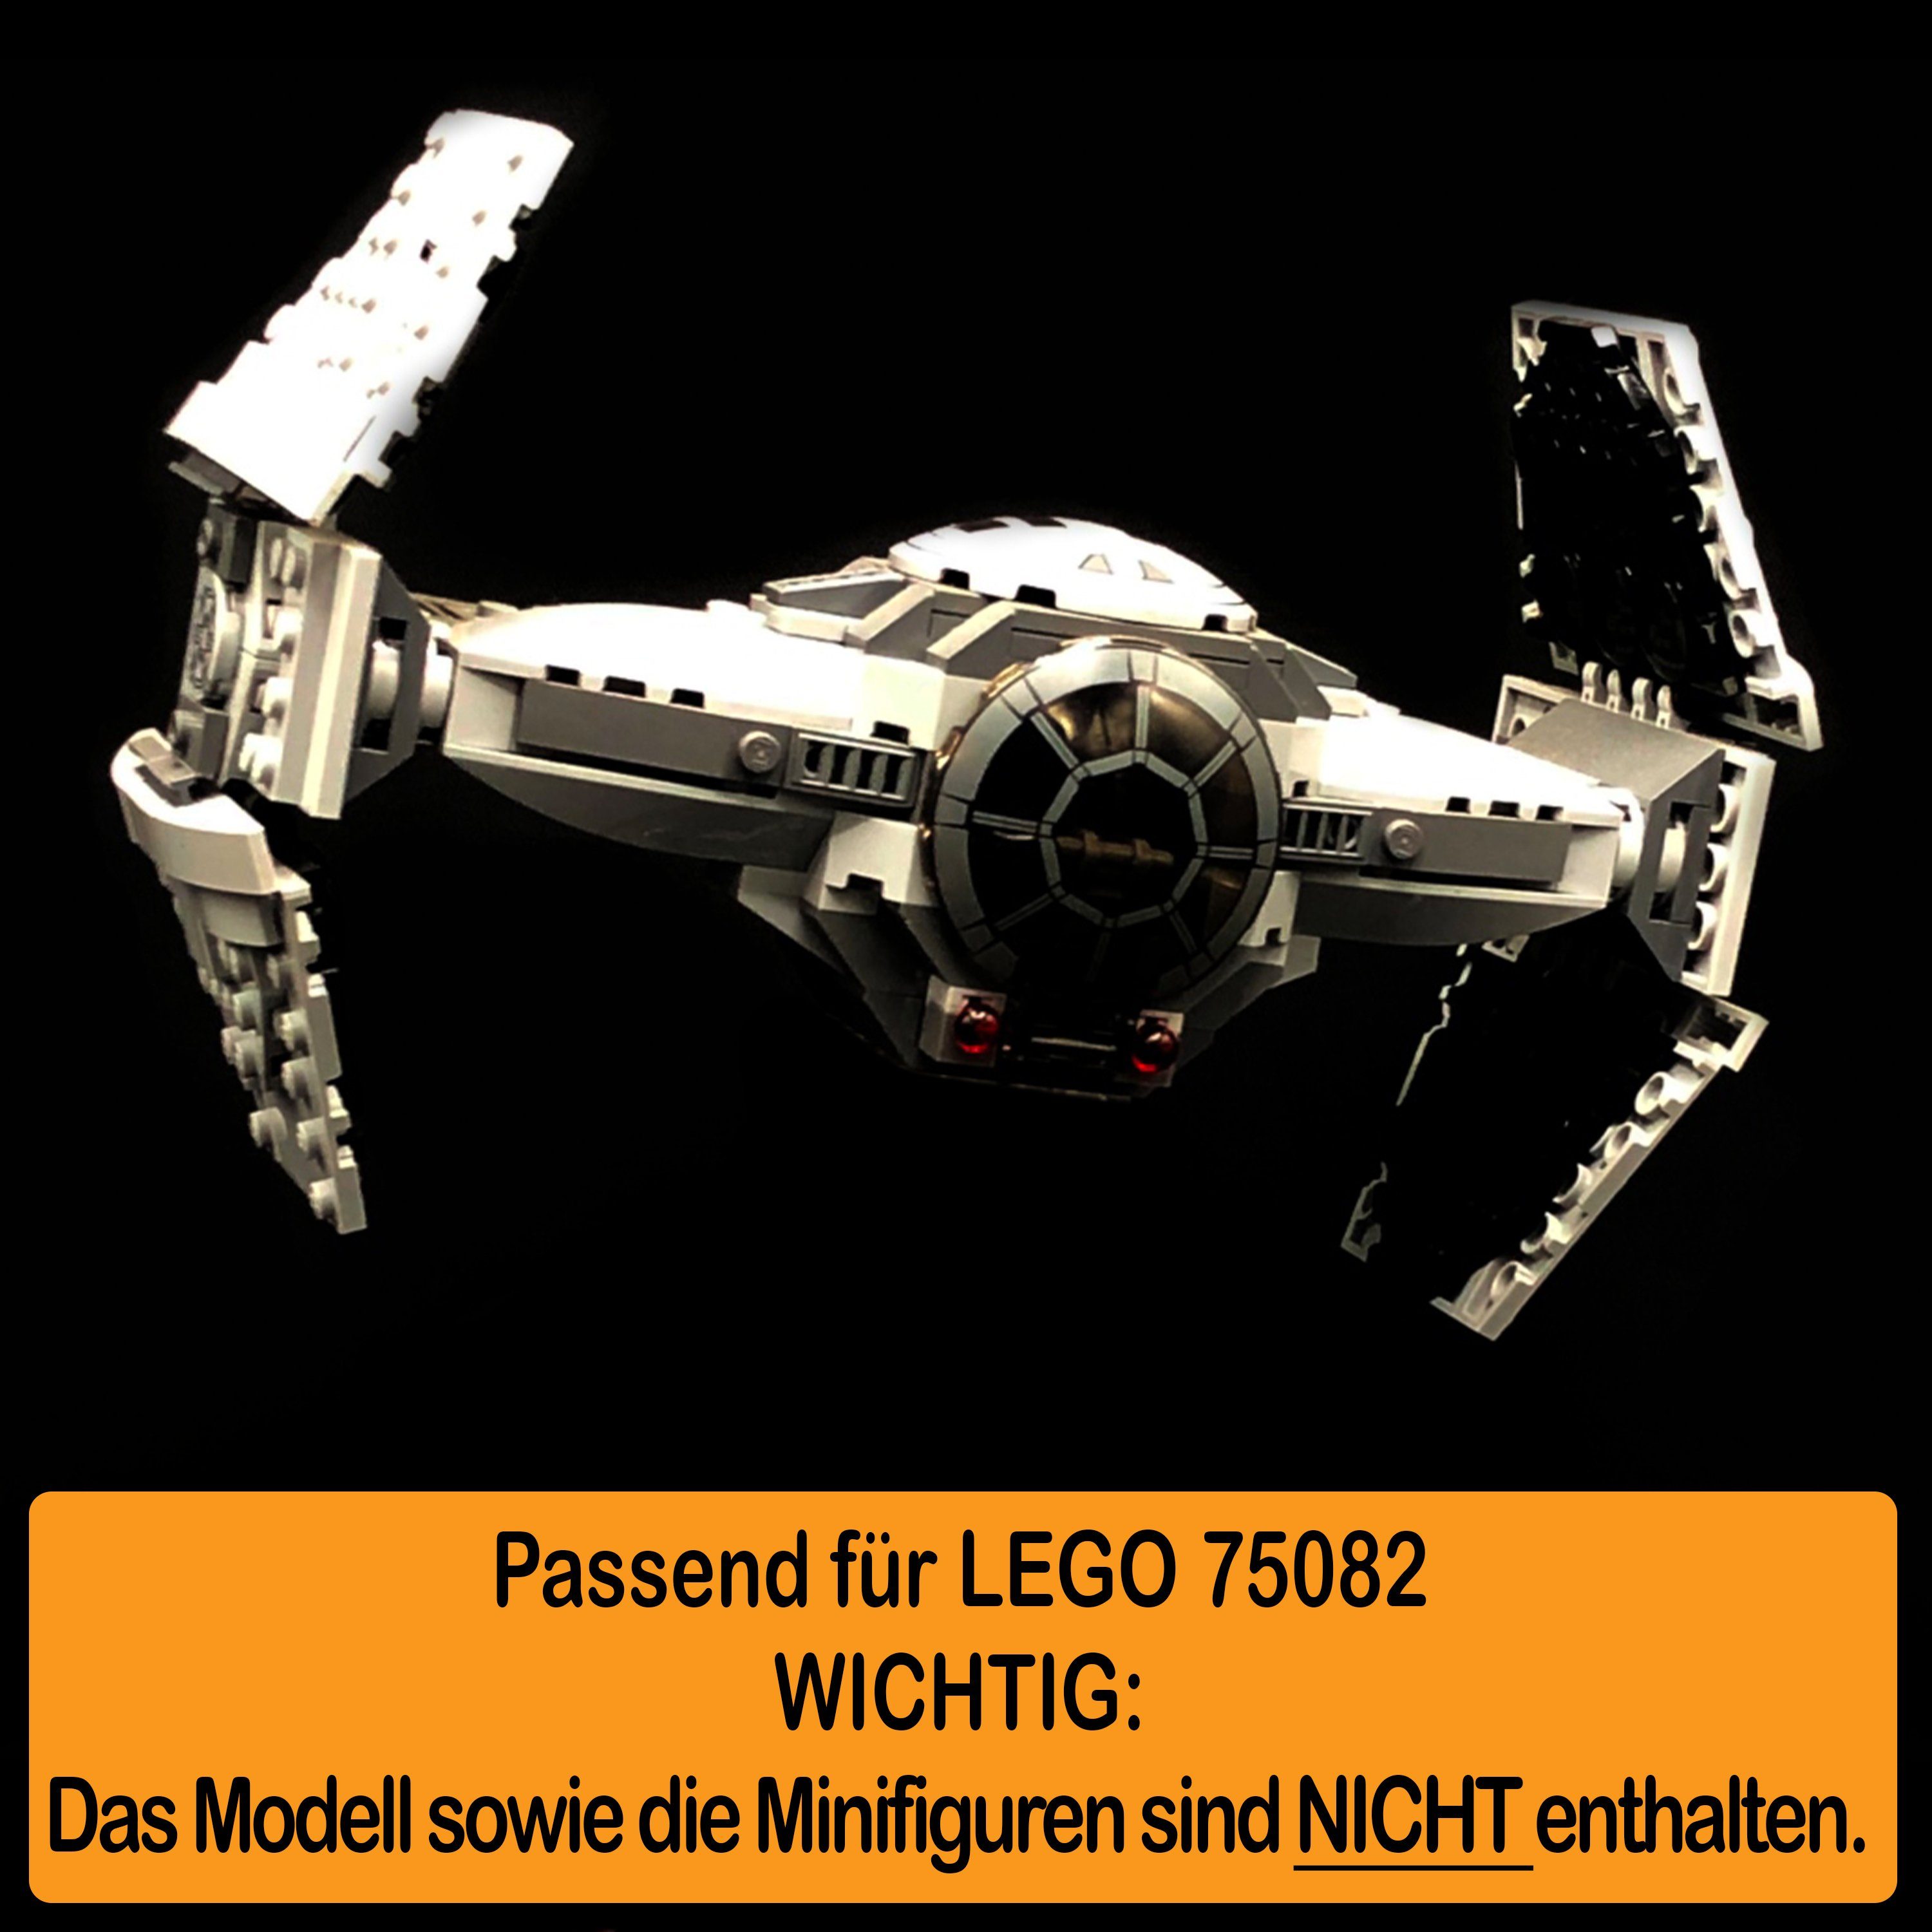 AREA17 Standfuß Acryl Display in Winkel 100% Positionen und Prototype (verschiedene selbst LEGO zum für Stand Germany zusammenbauen), 75082 einstellbar, Advanced TIE Made